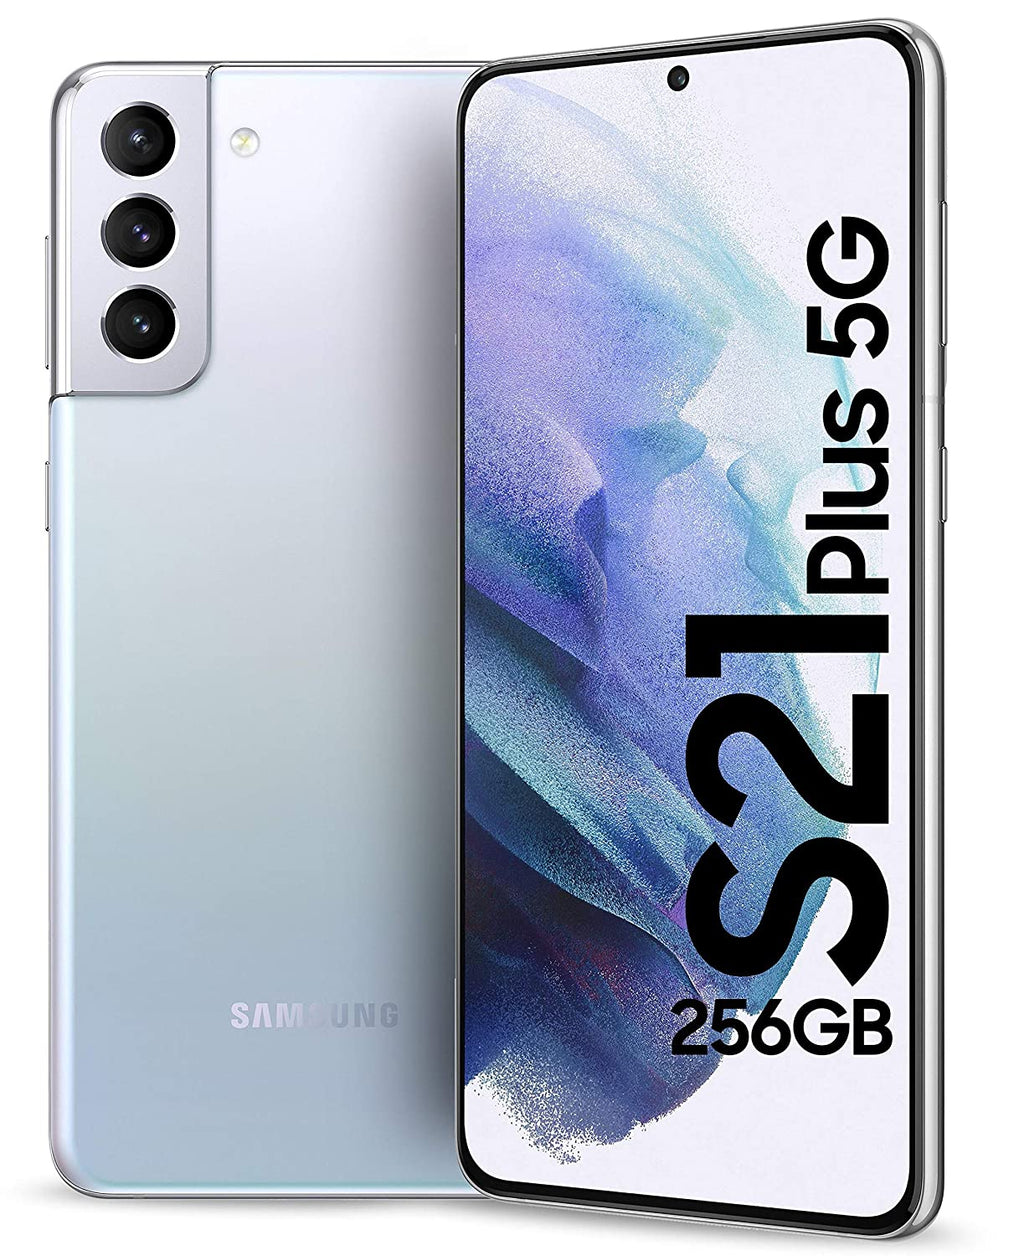 सैमसंग गैलेक्सी S21 प्लस 5G, 256GB, 8GB रैम का इस्तेमाल किया गया है